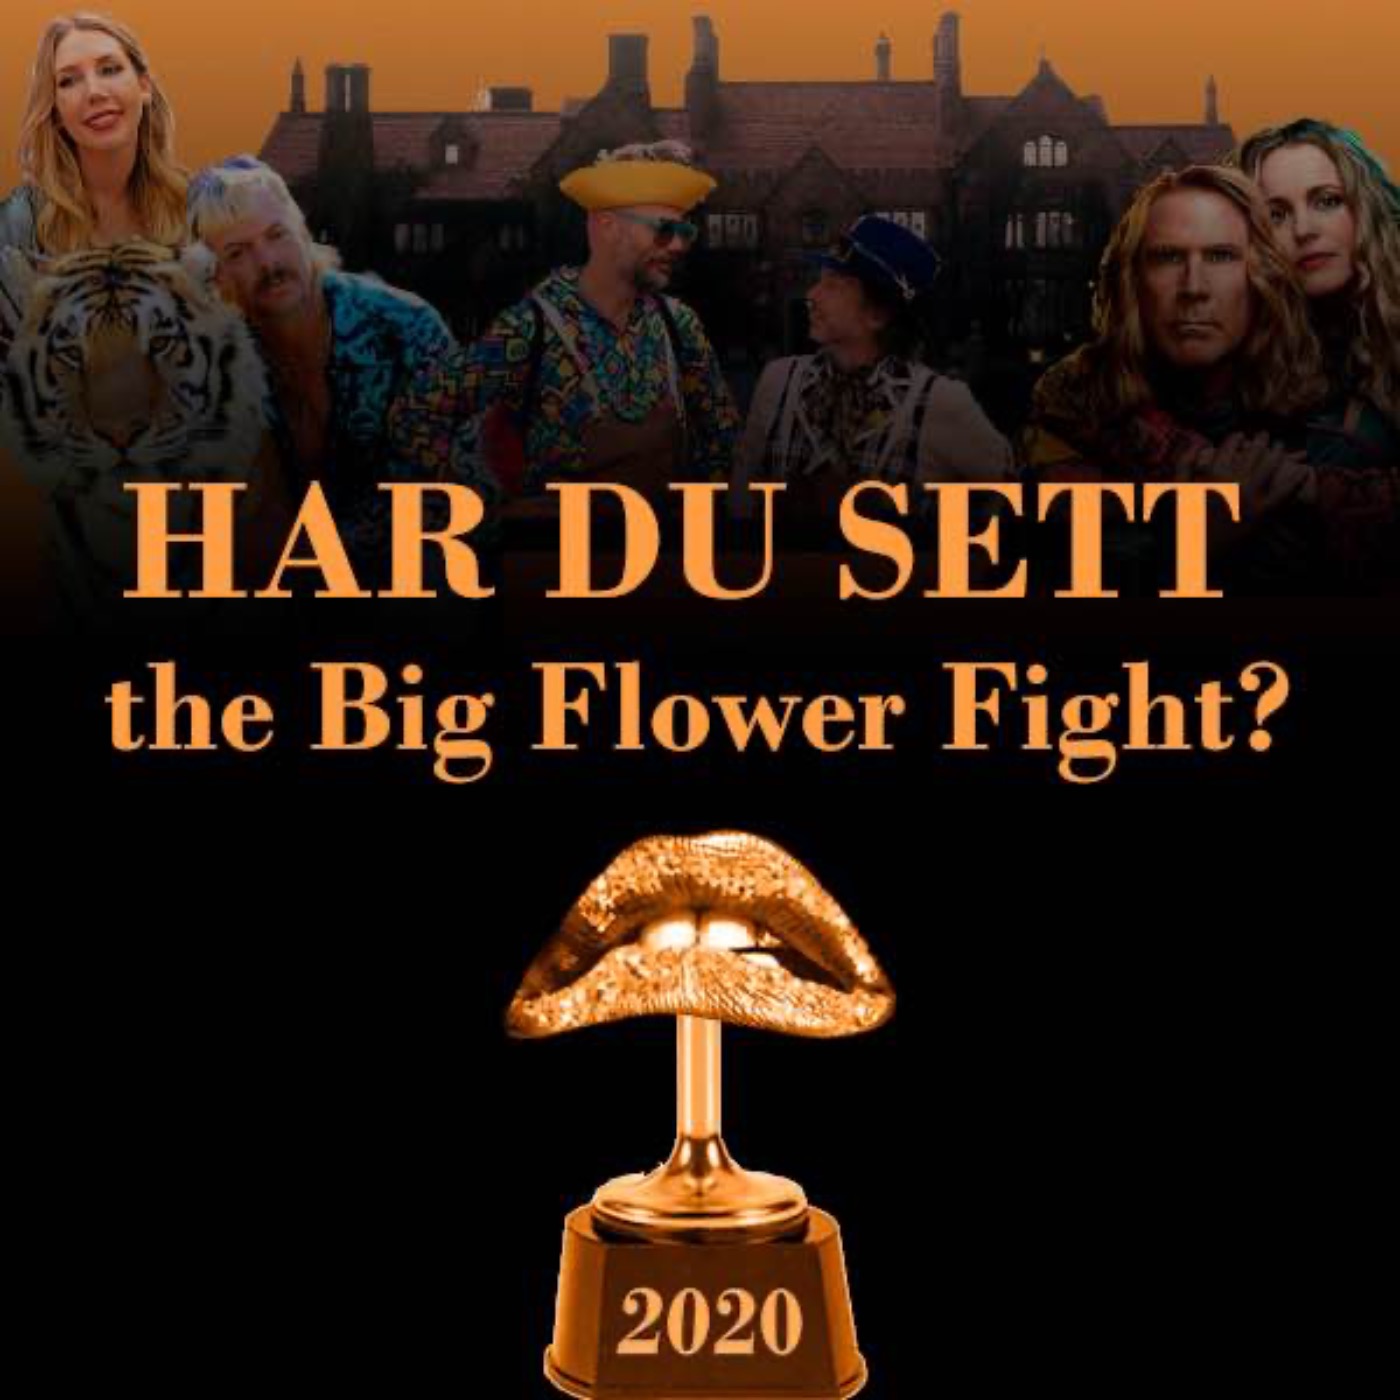 Har du sett the Big Flower Fight?